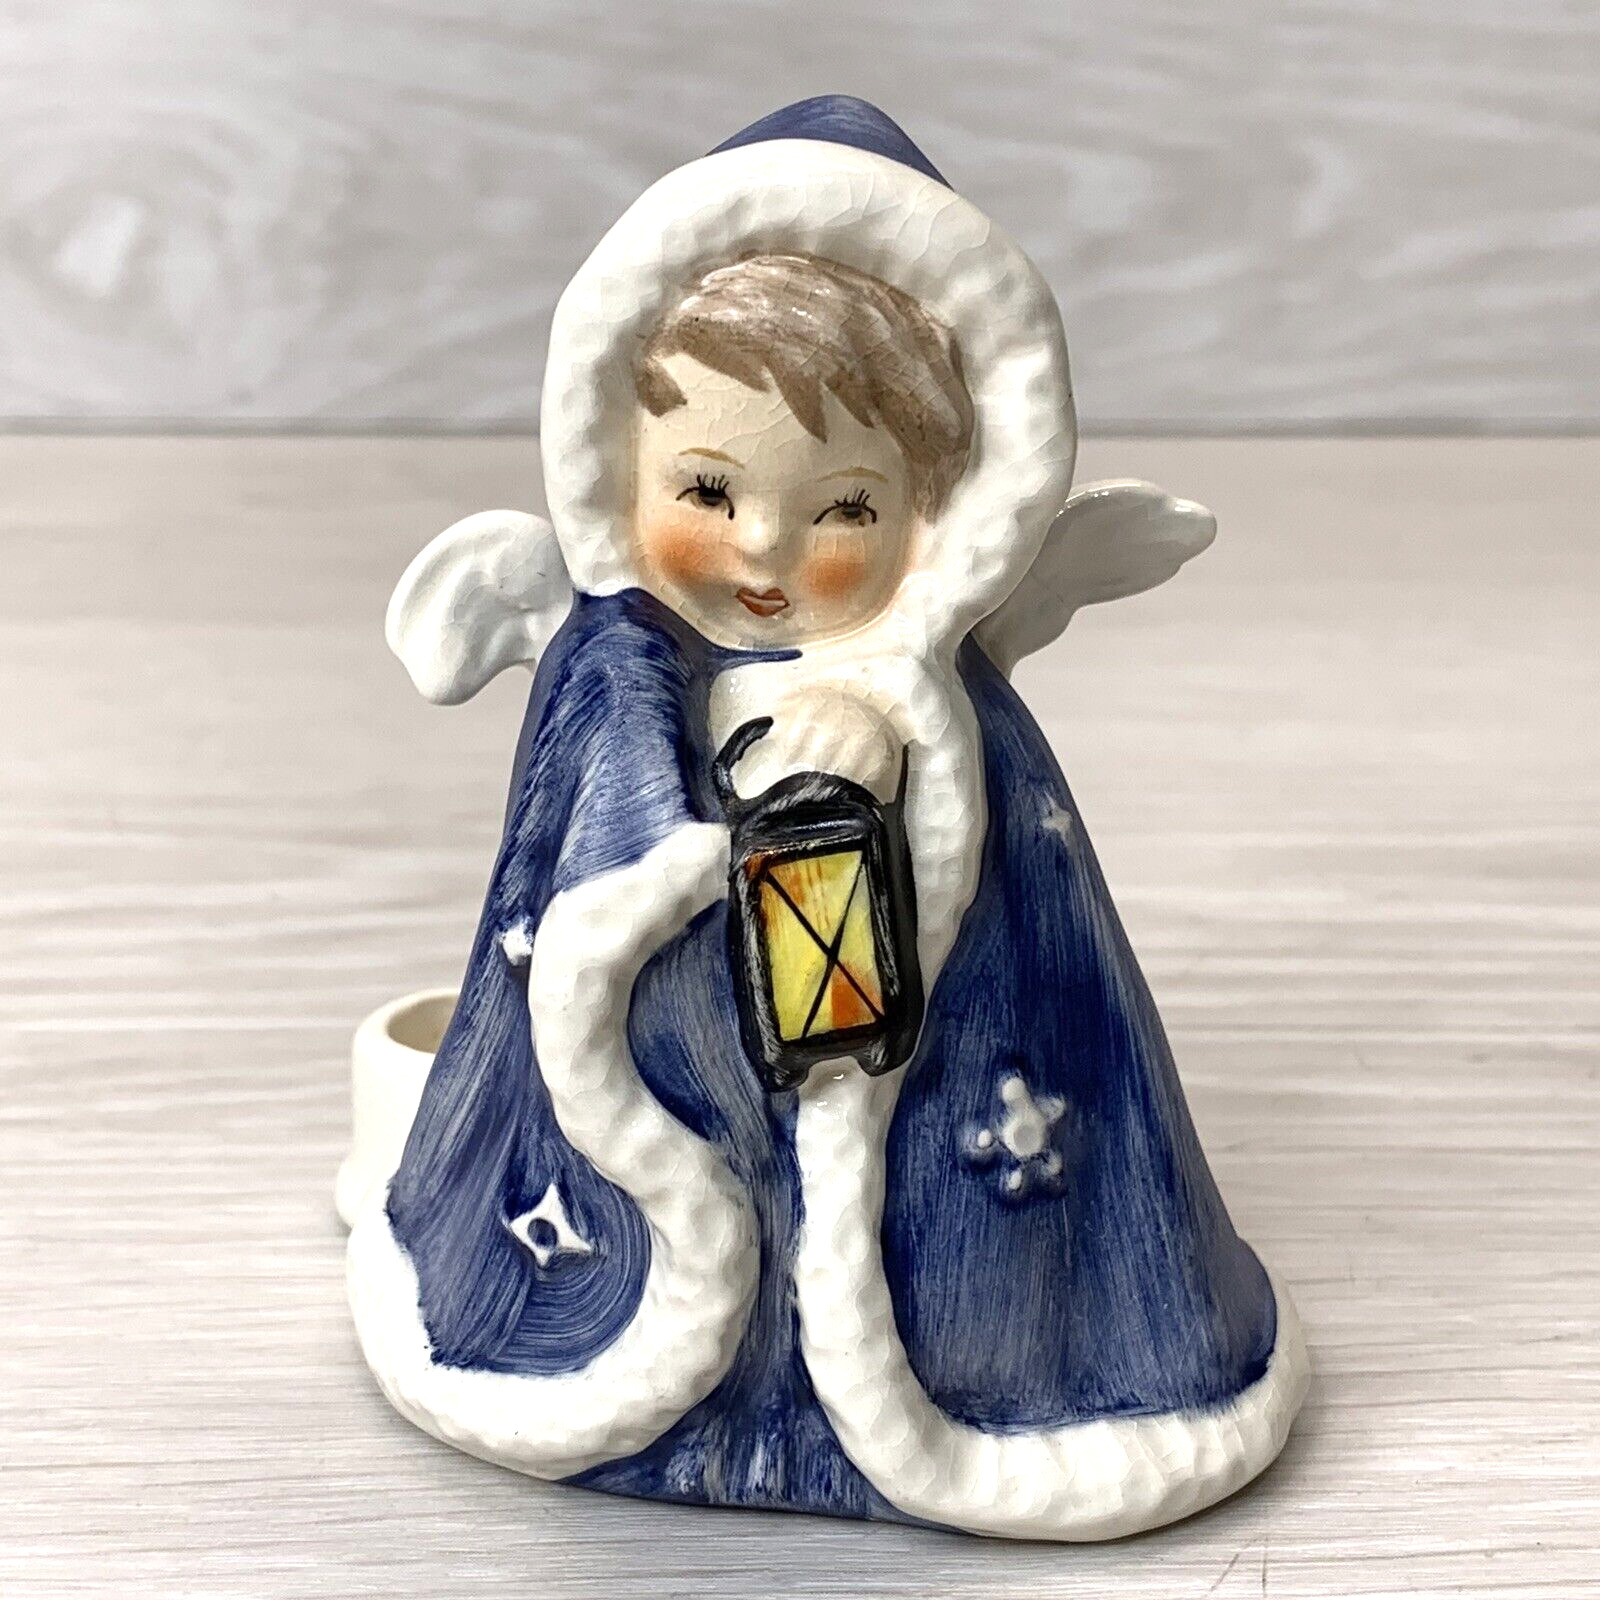 VTG Goebel Blue Angel w/lantern 1958 Candle Holder SIGNED Figurine Germany